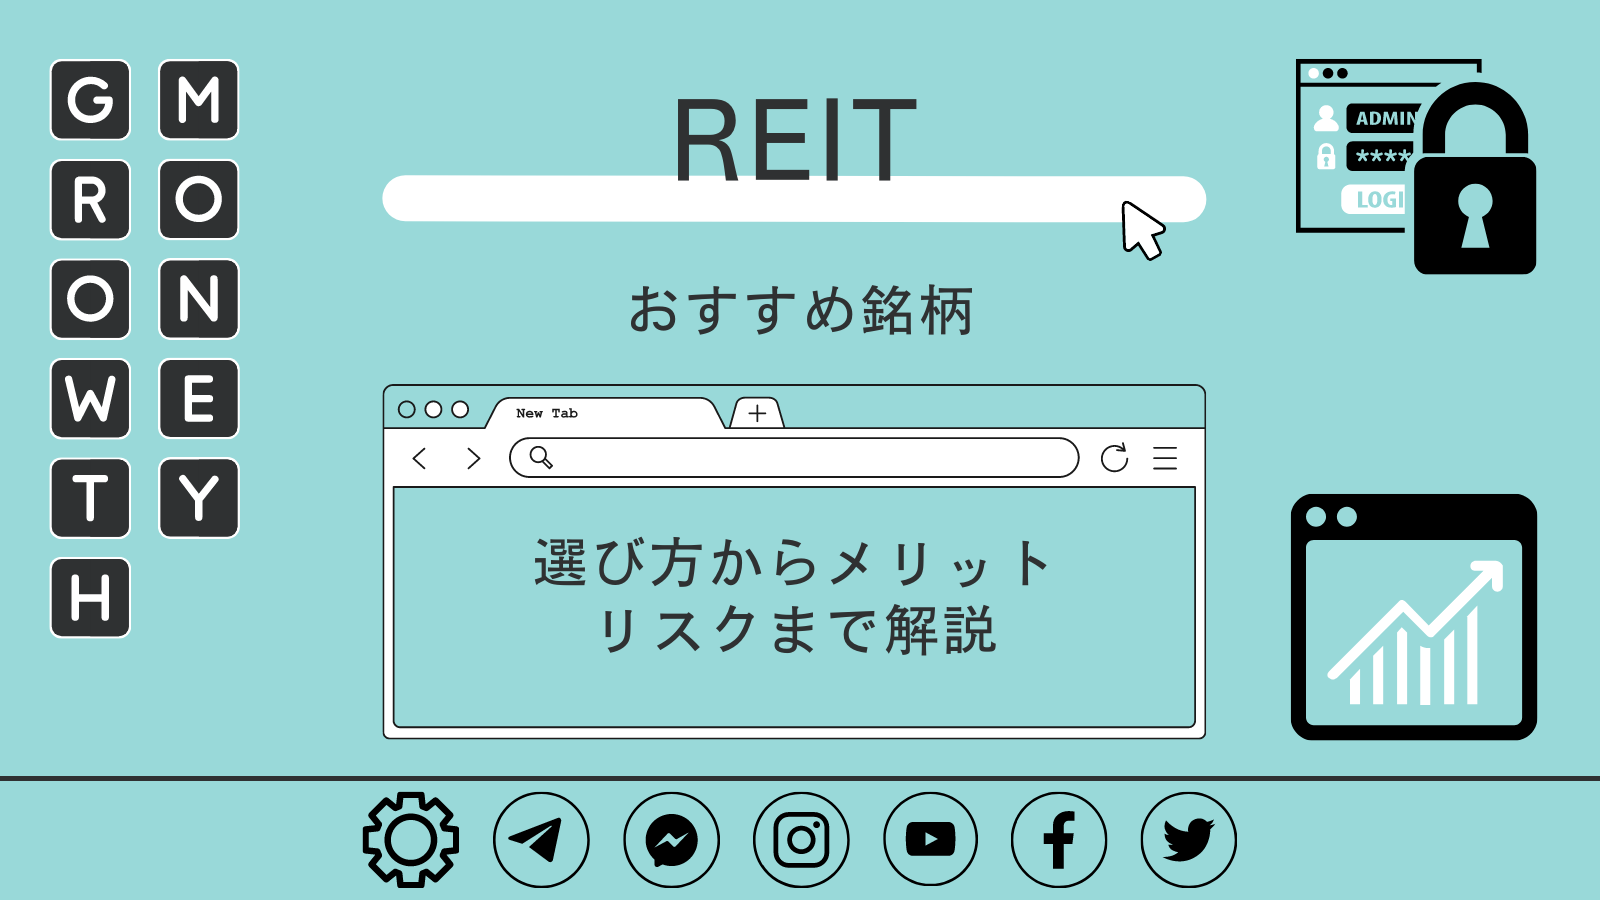 REIT(リート)のおすすめ銘柄